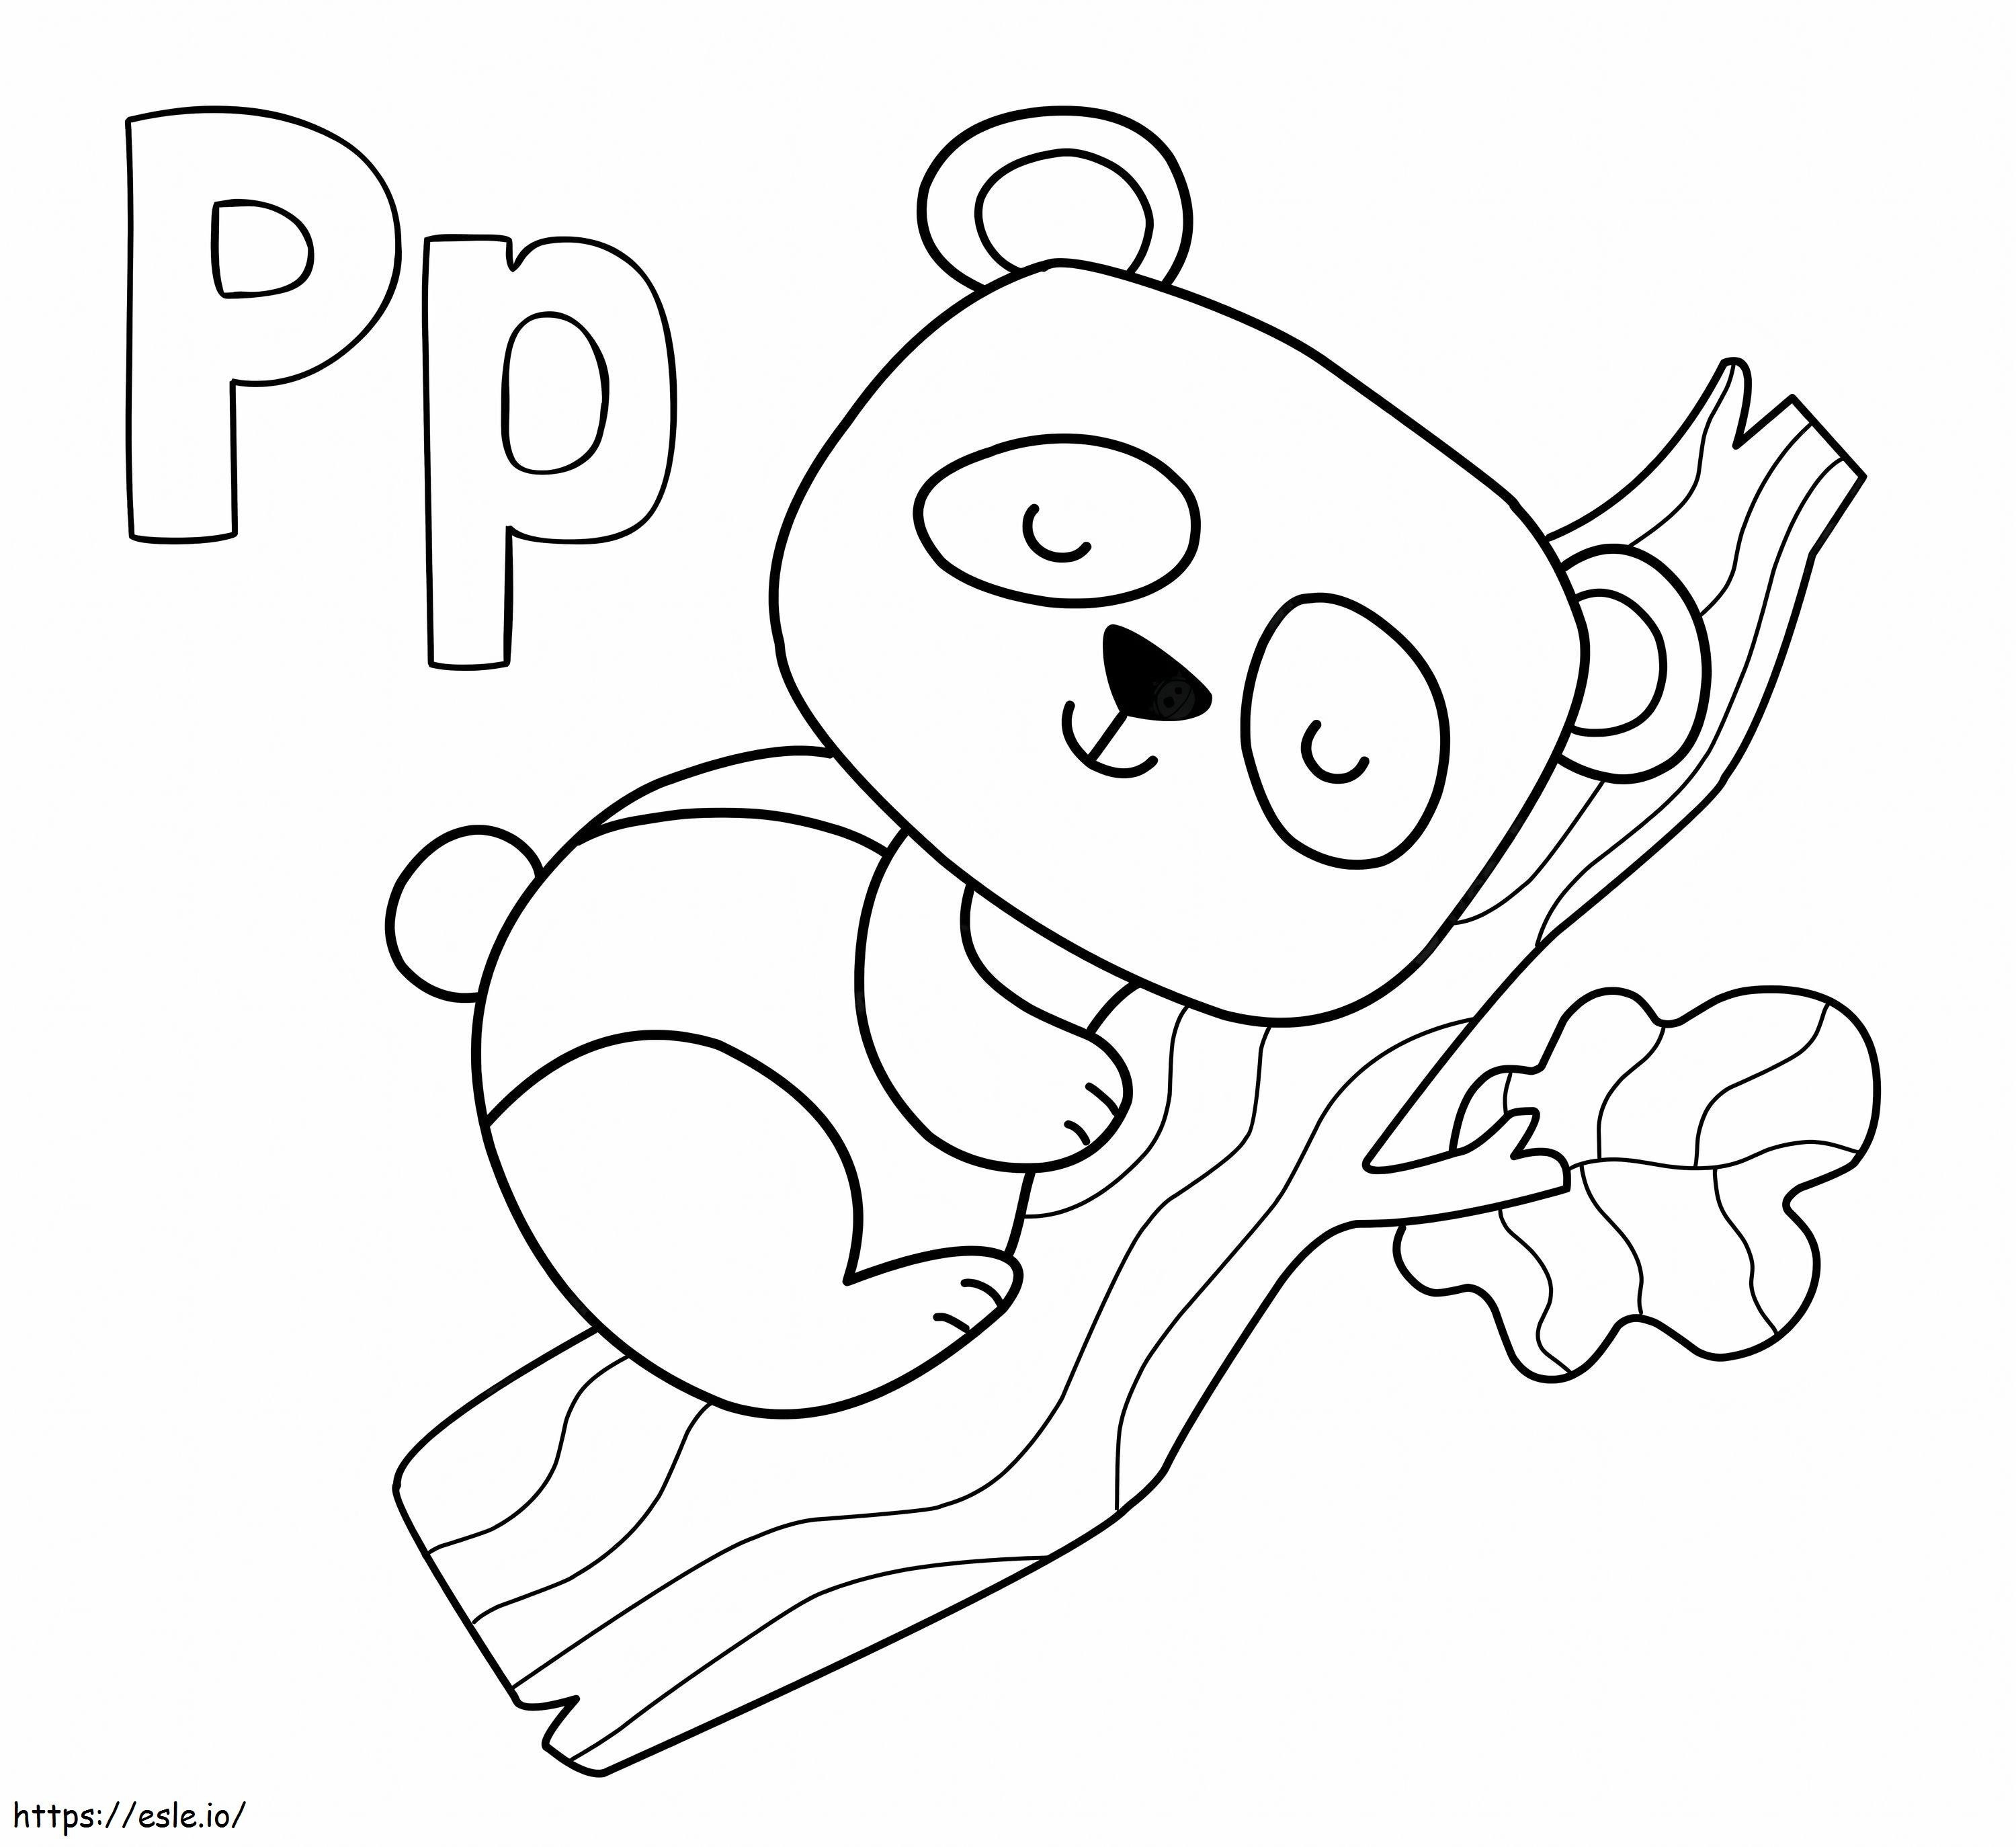 P betű Pandával kifestő